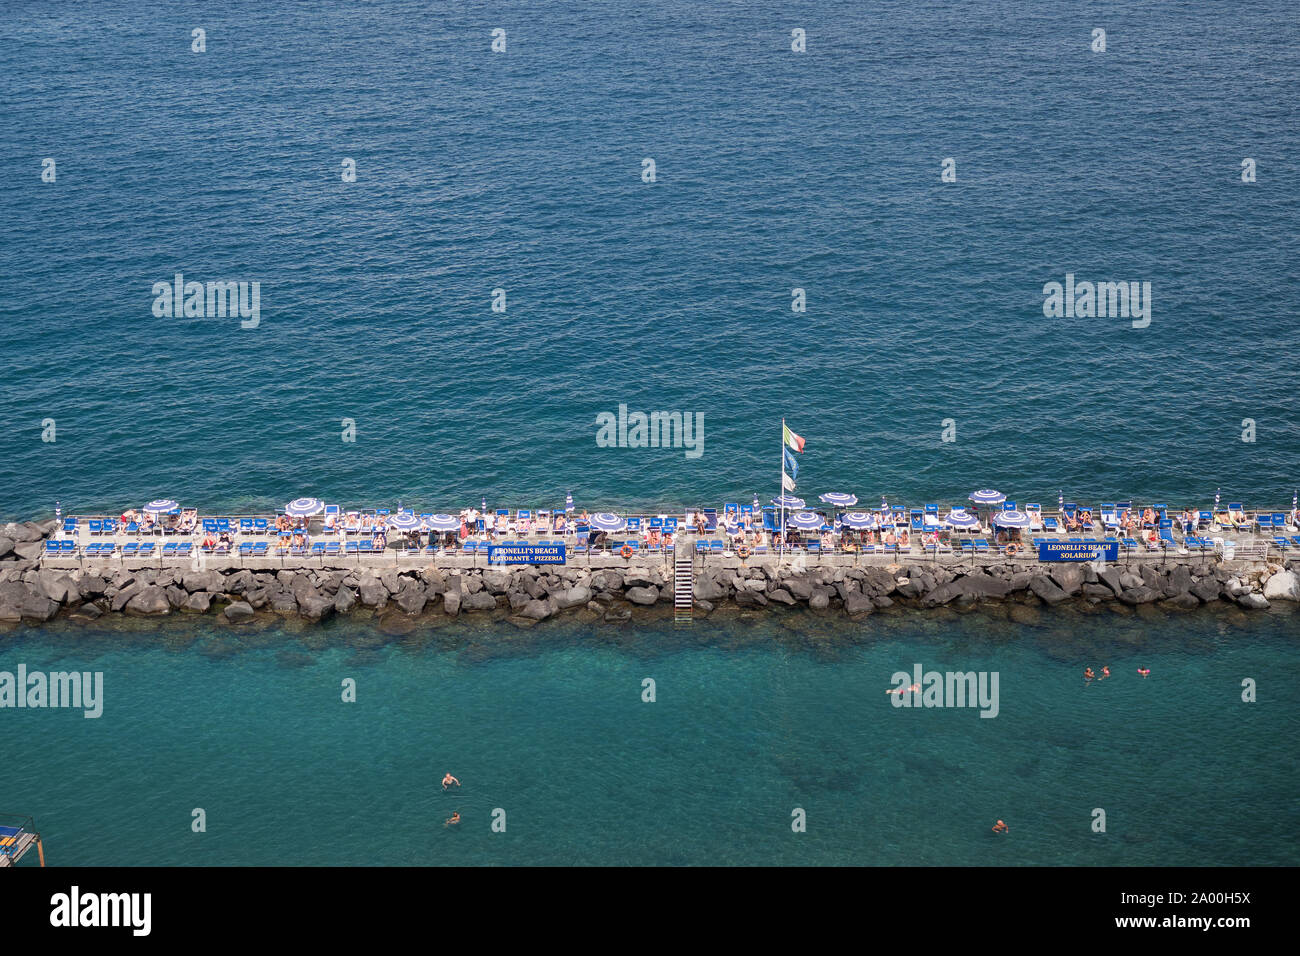 Sunbathers in Sorrento in Italy Stock Photo